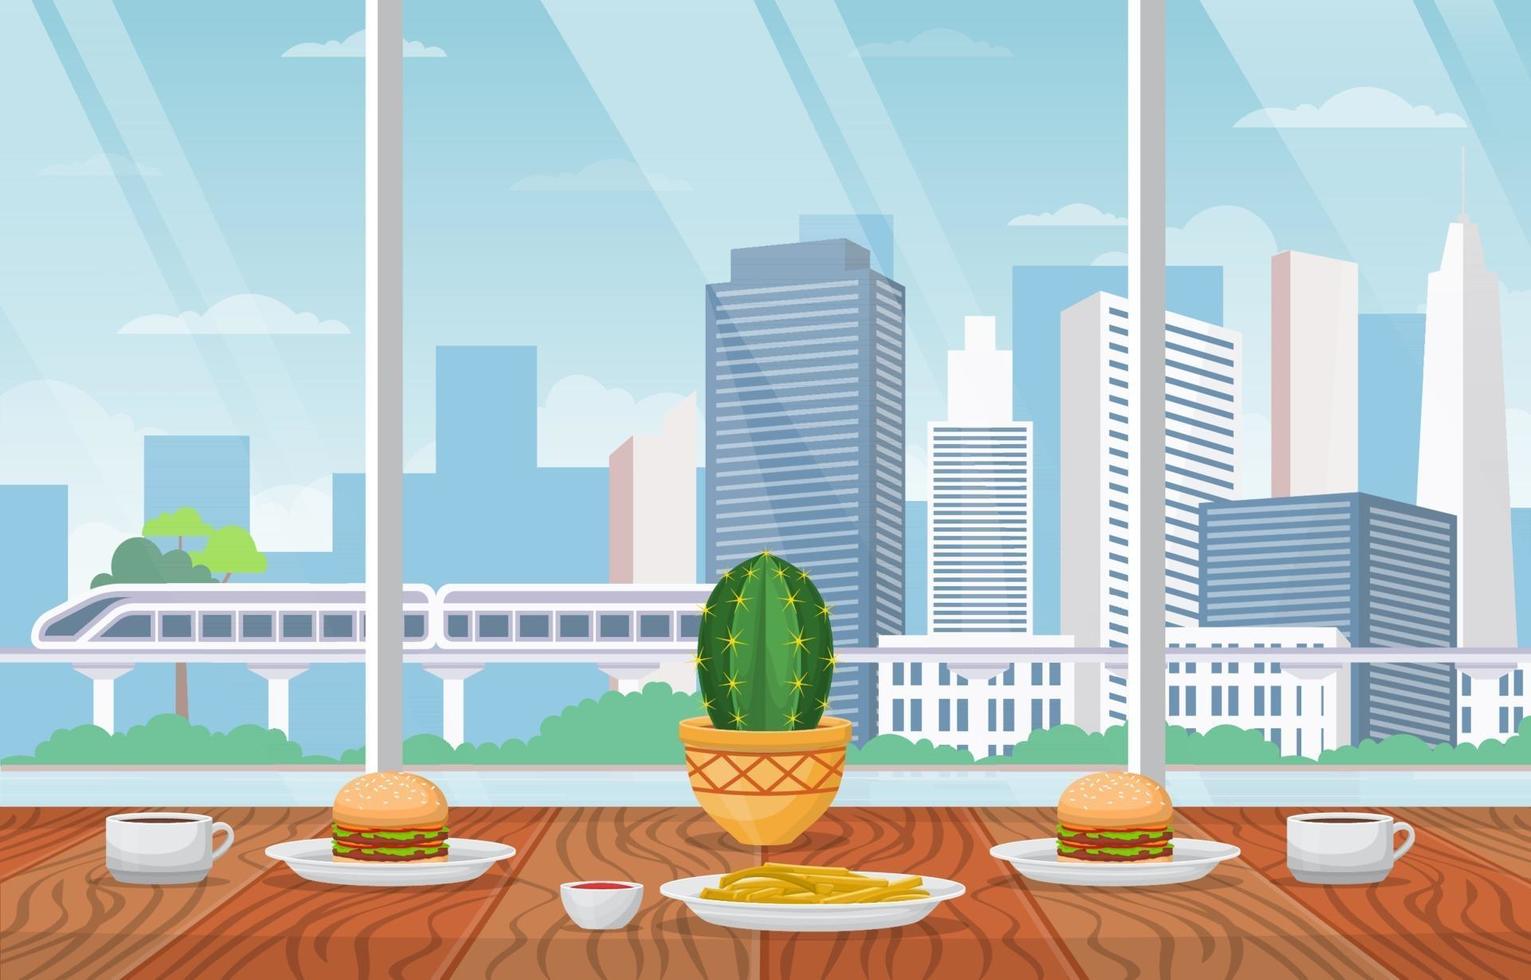 almoço em restaurante com ilustração da vista da cidade vetor